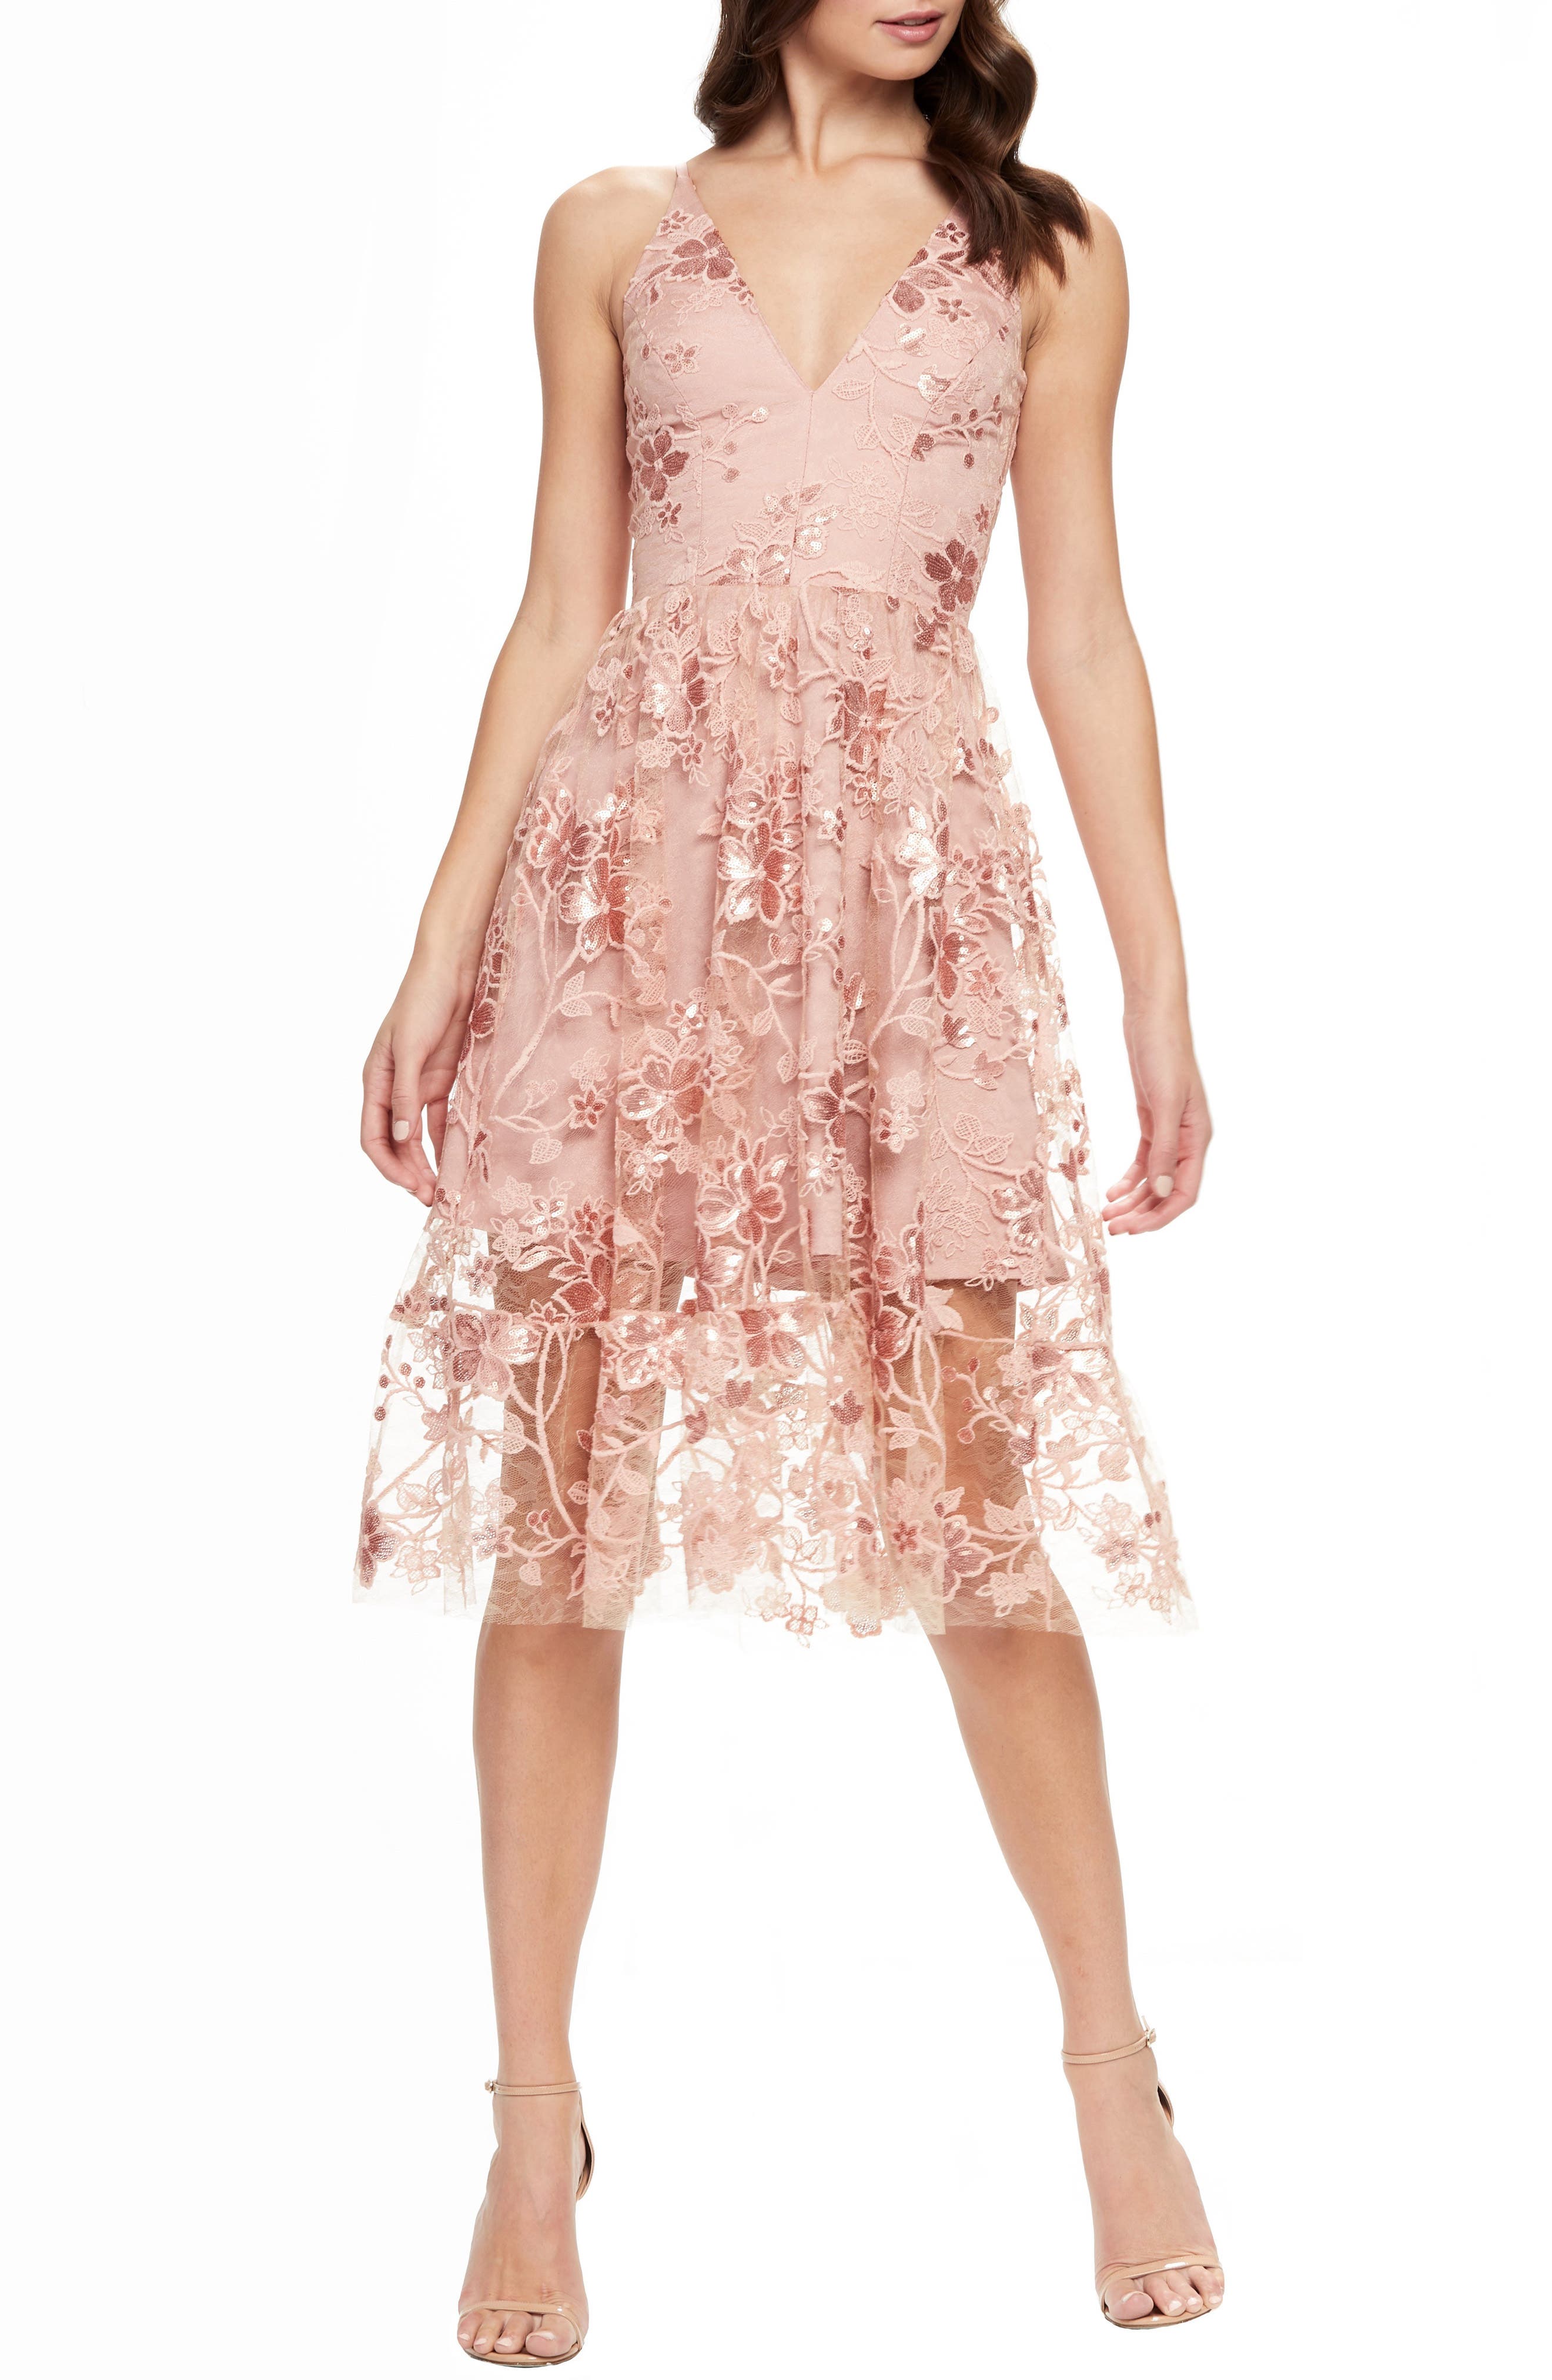 Nordstrom Formal Dresses On Sale Online ...